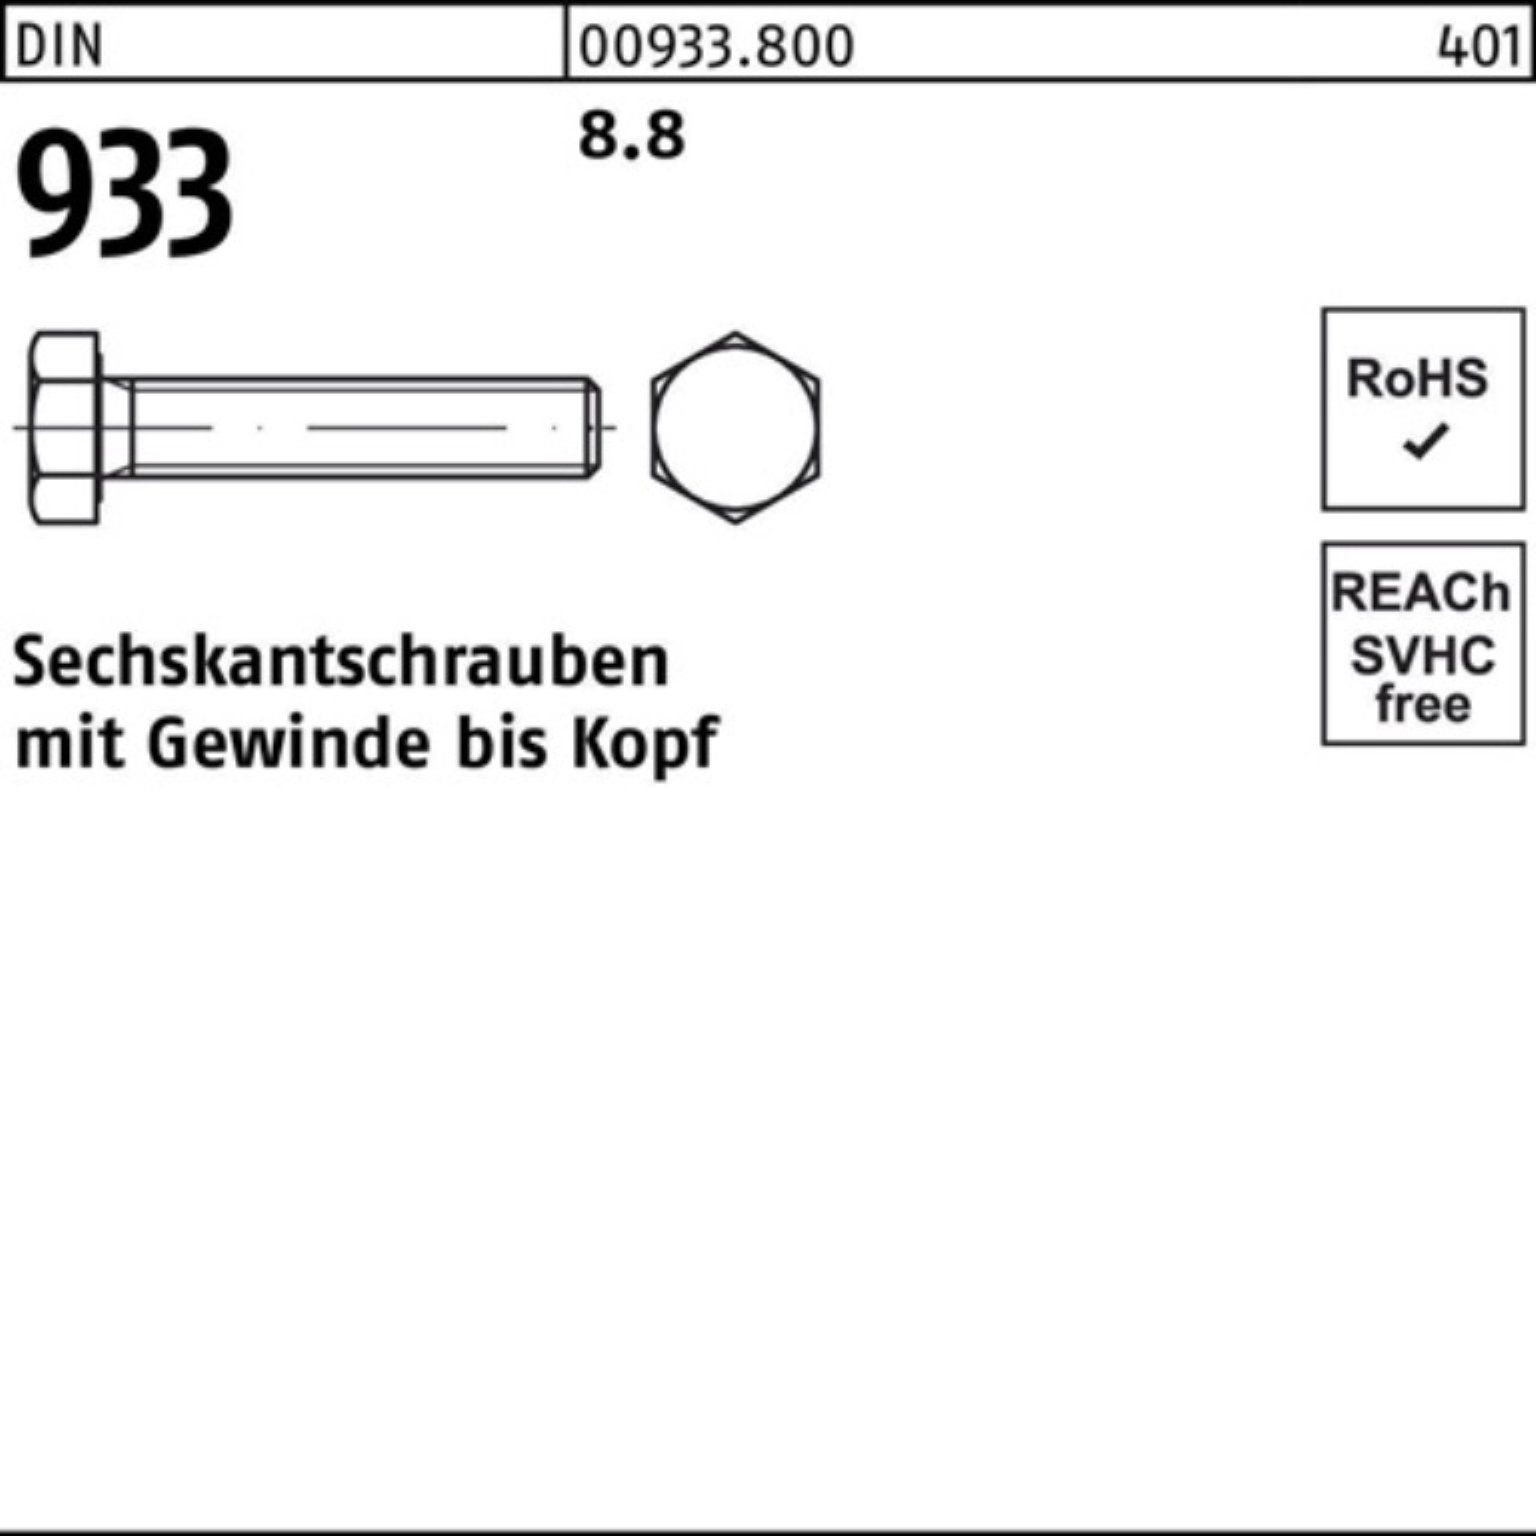 8.8 933 Reyher Sechskantschraube Stück DIN Pack VG Sechskantschraube 933 100er 25 DIN 220 M12x